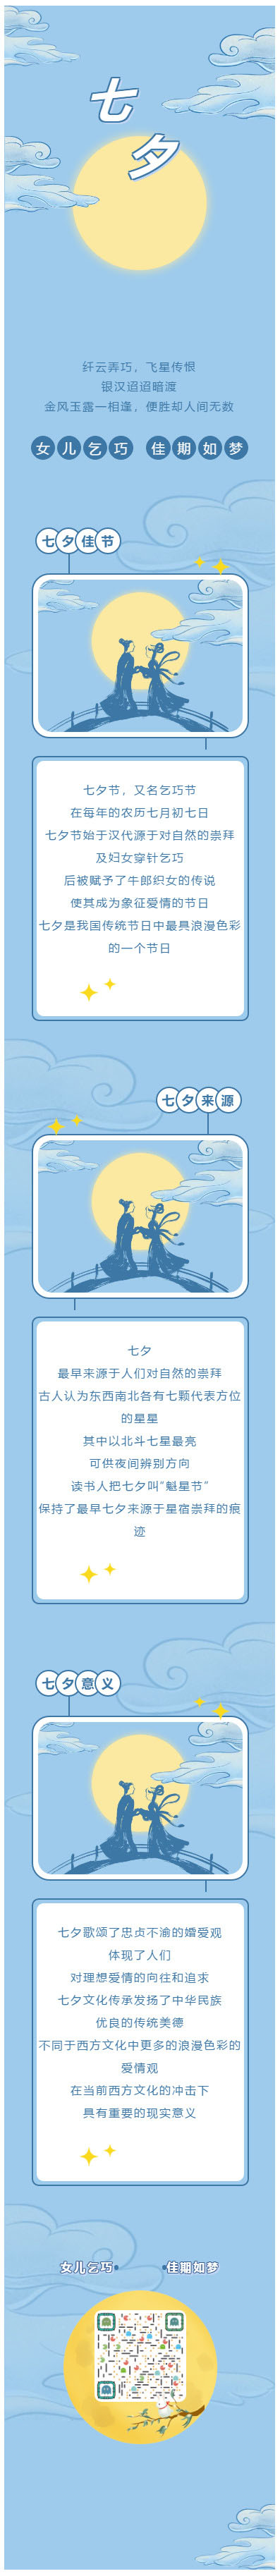 七夕节牛郎织女鹊桥微信公众号情人节模板推送图文素材推文模板